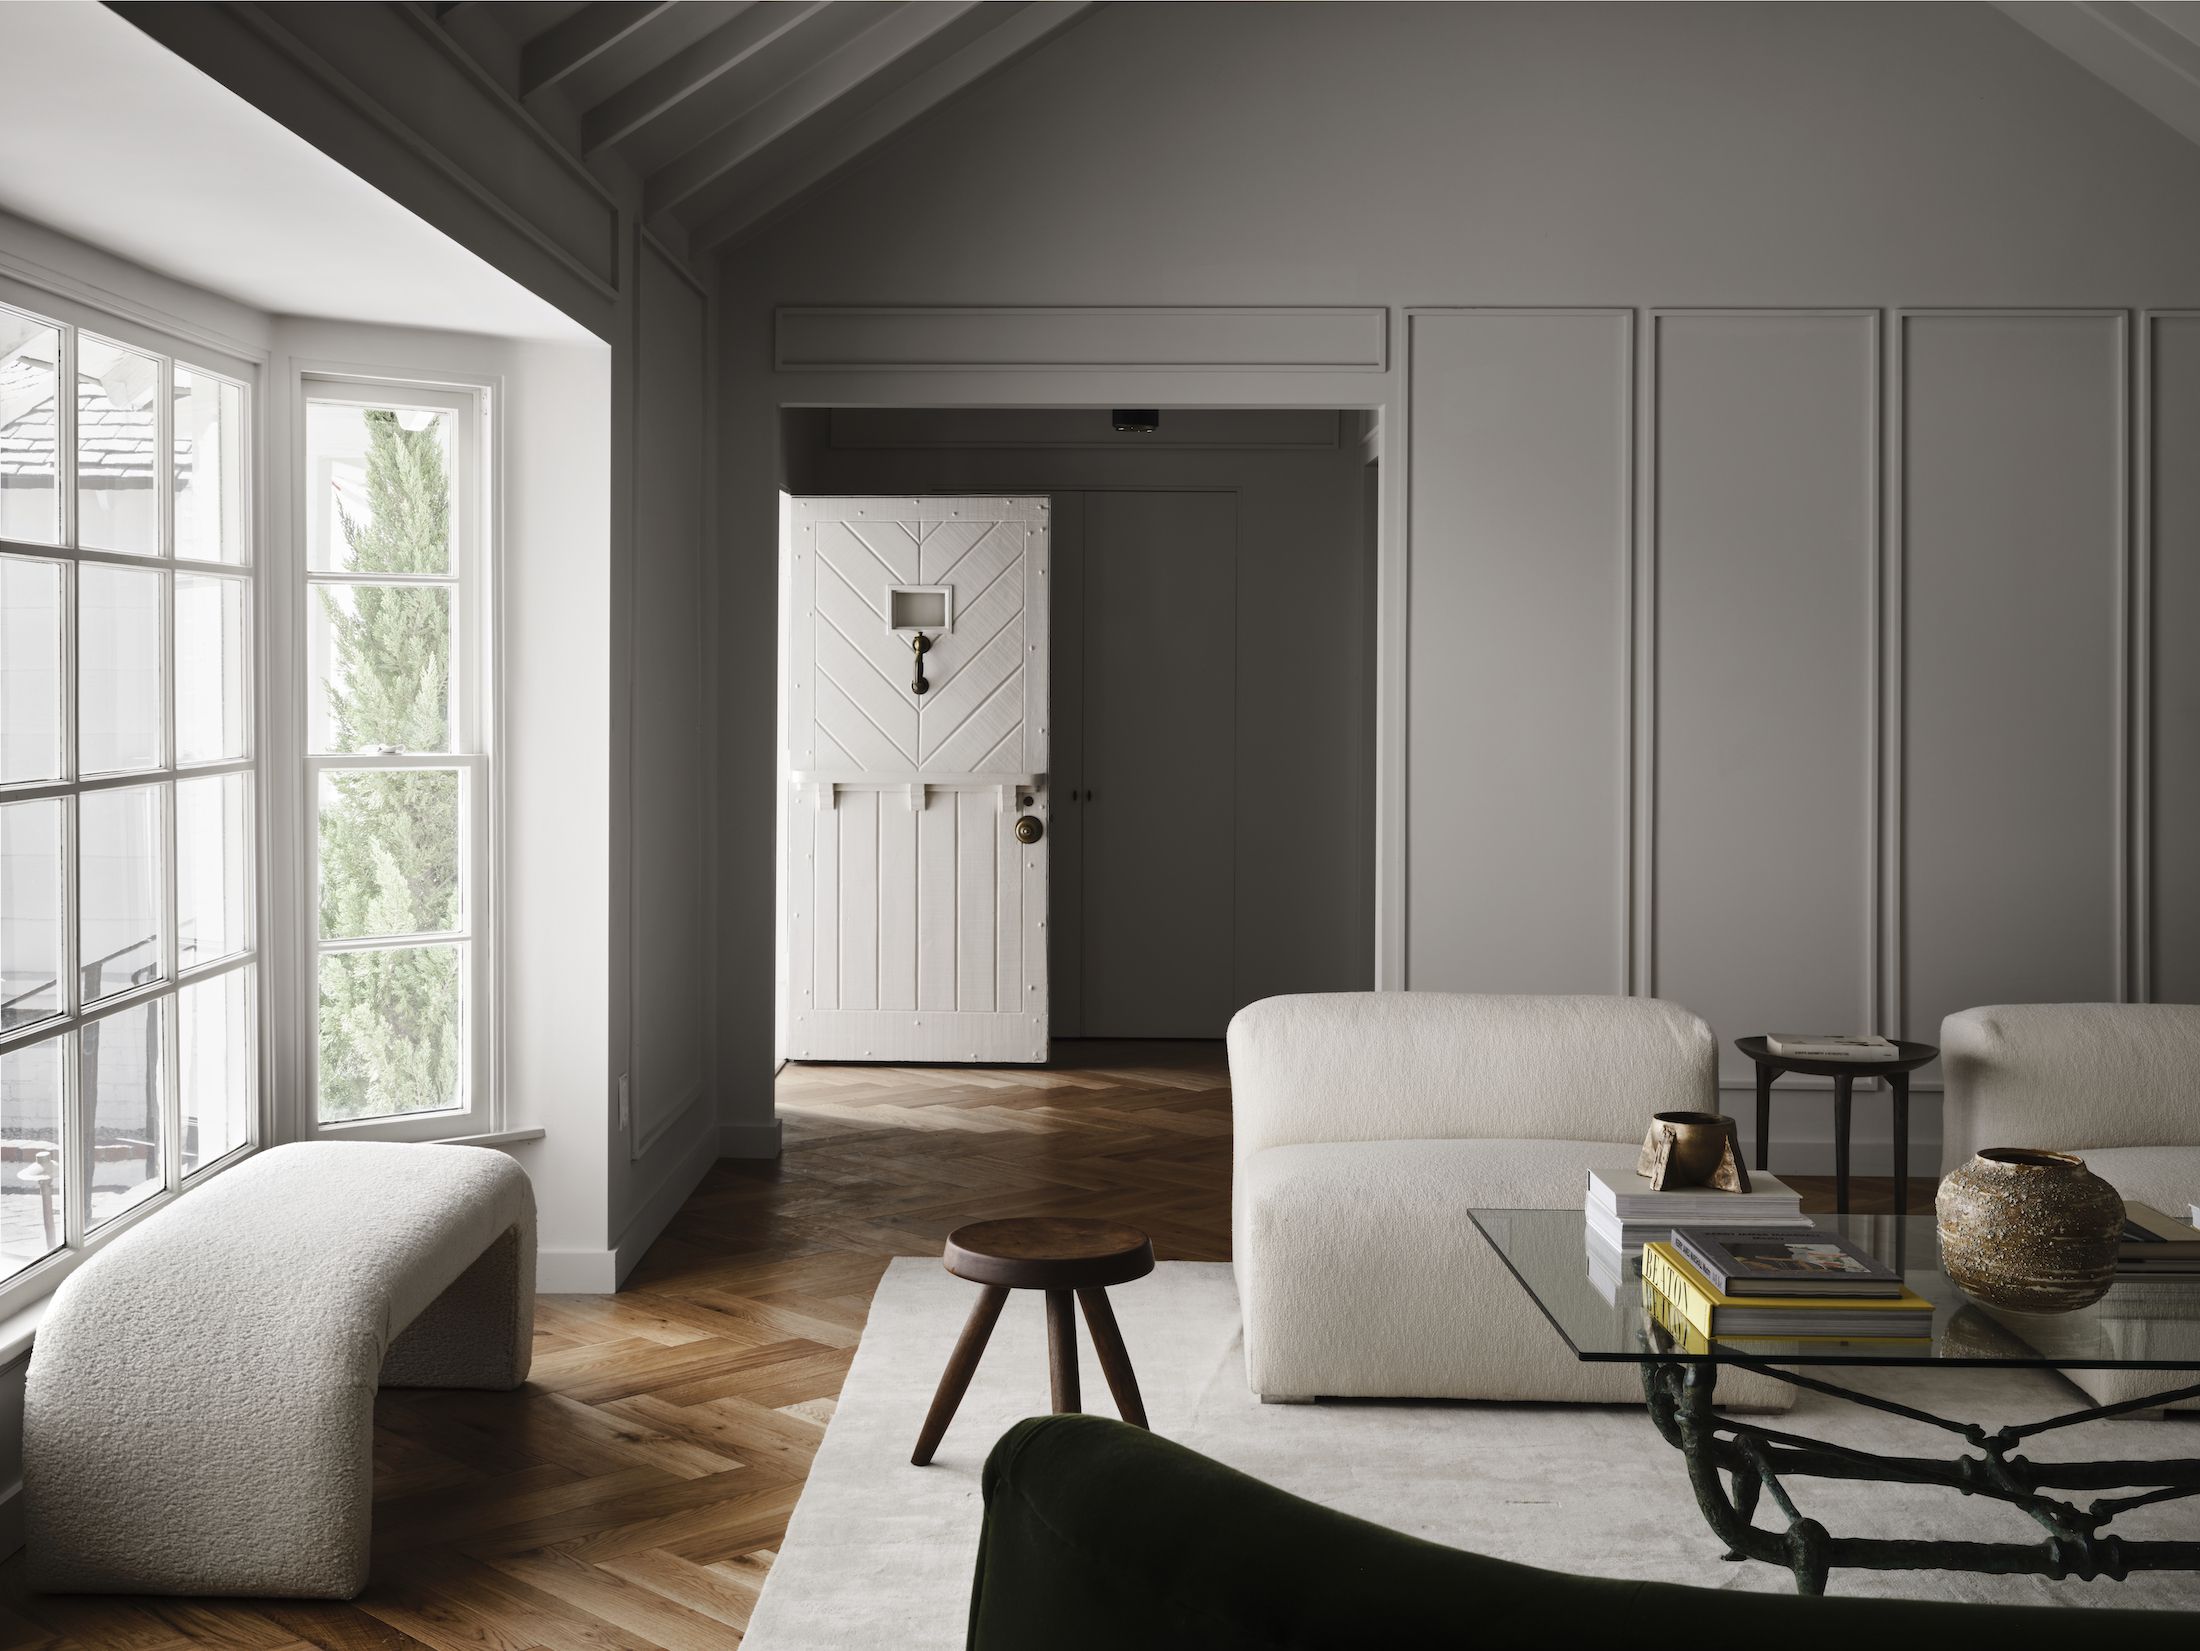 Color Palette for Home: 12 Combos Designers Love | Havenly Blog | Havenly  Interior Design Blog